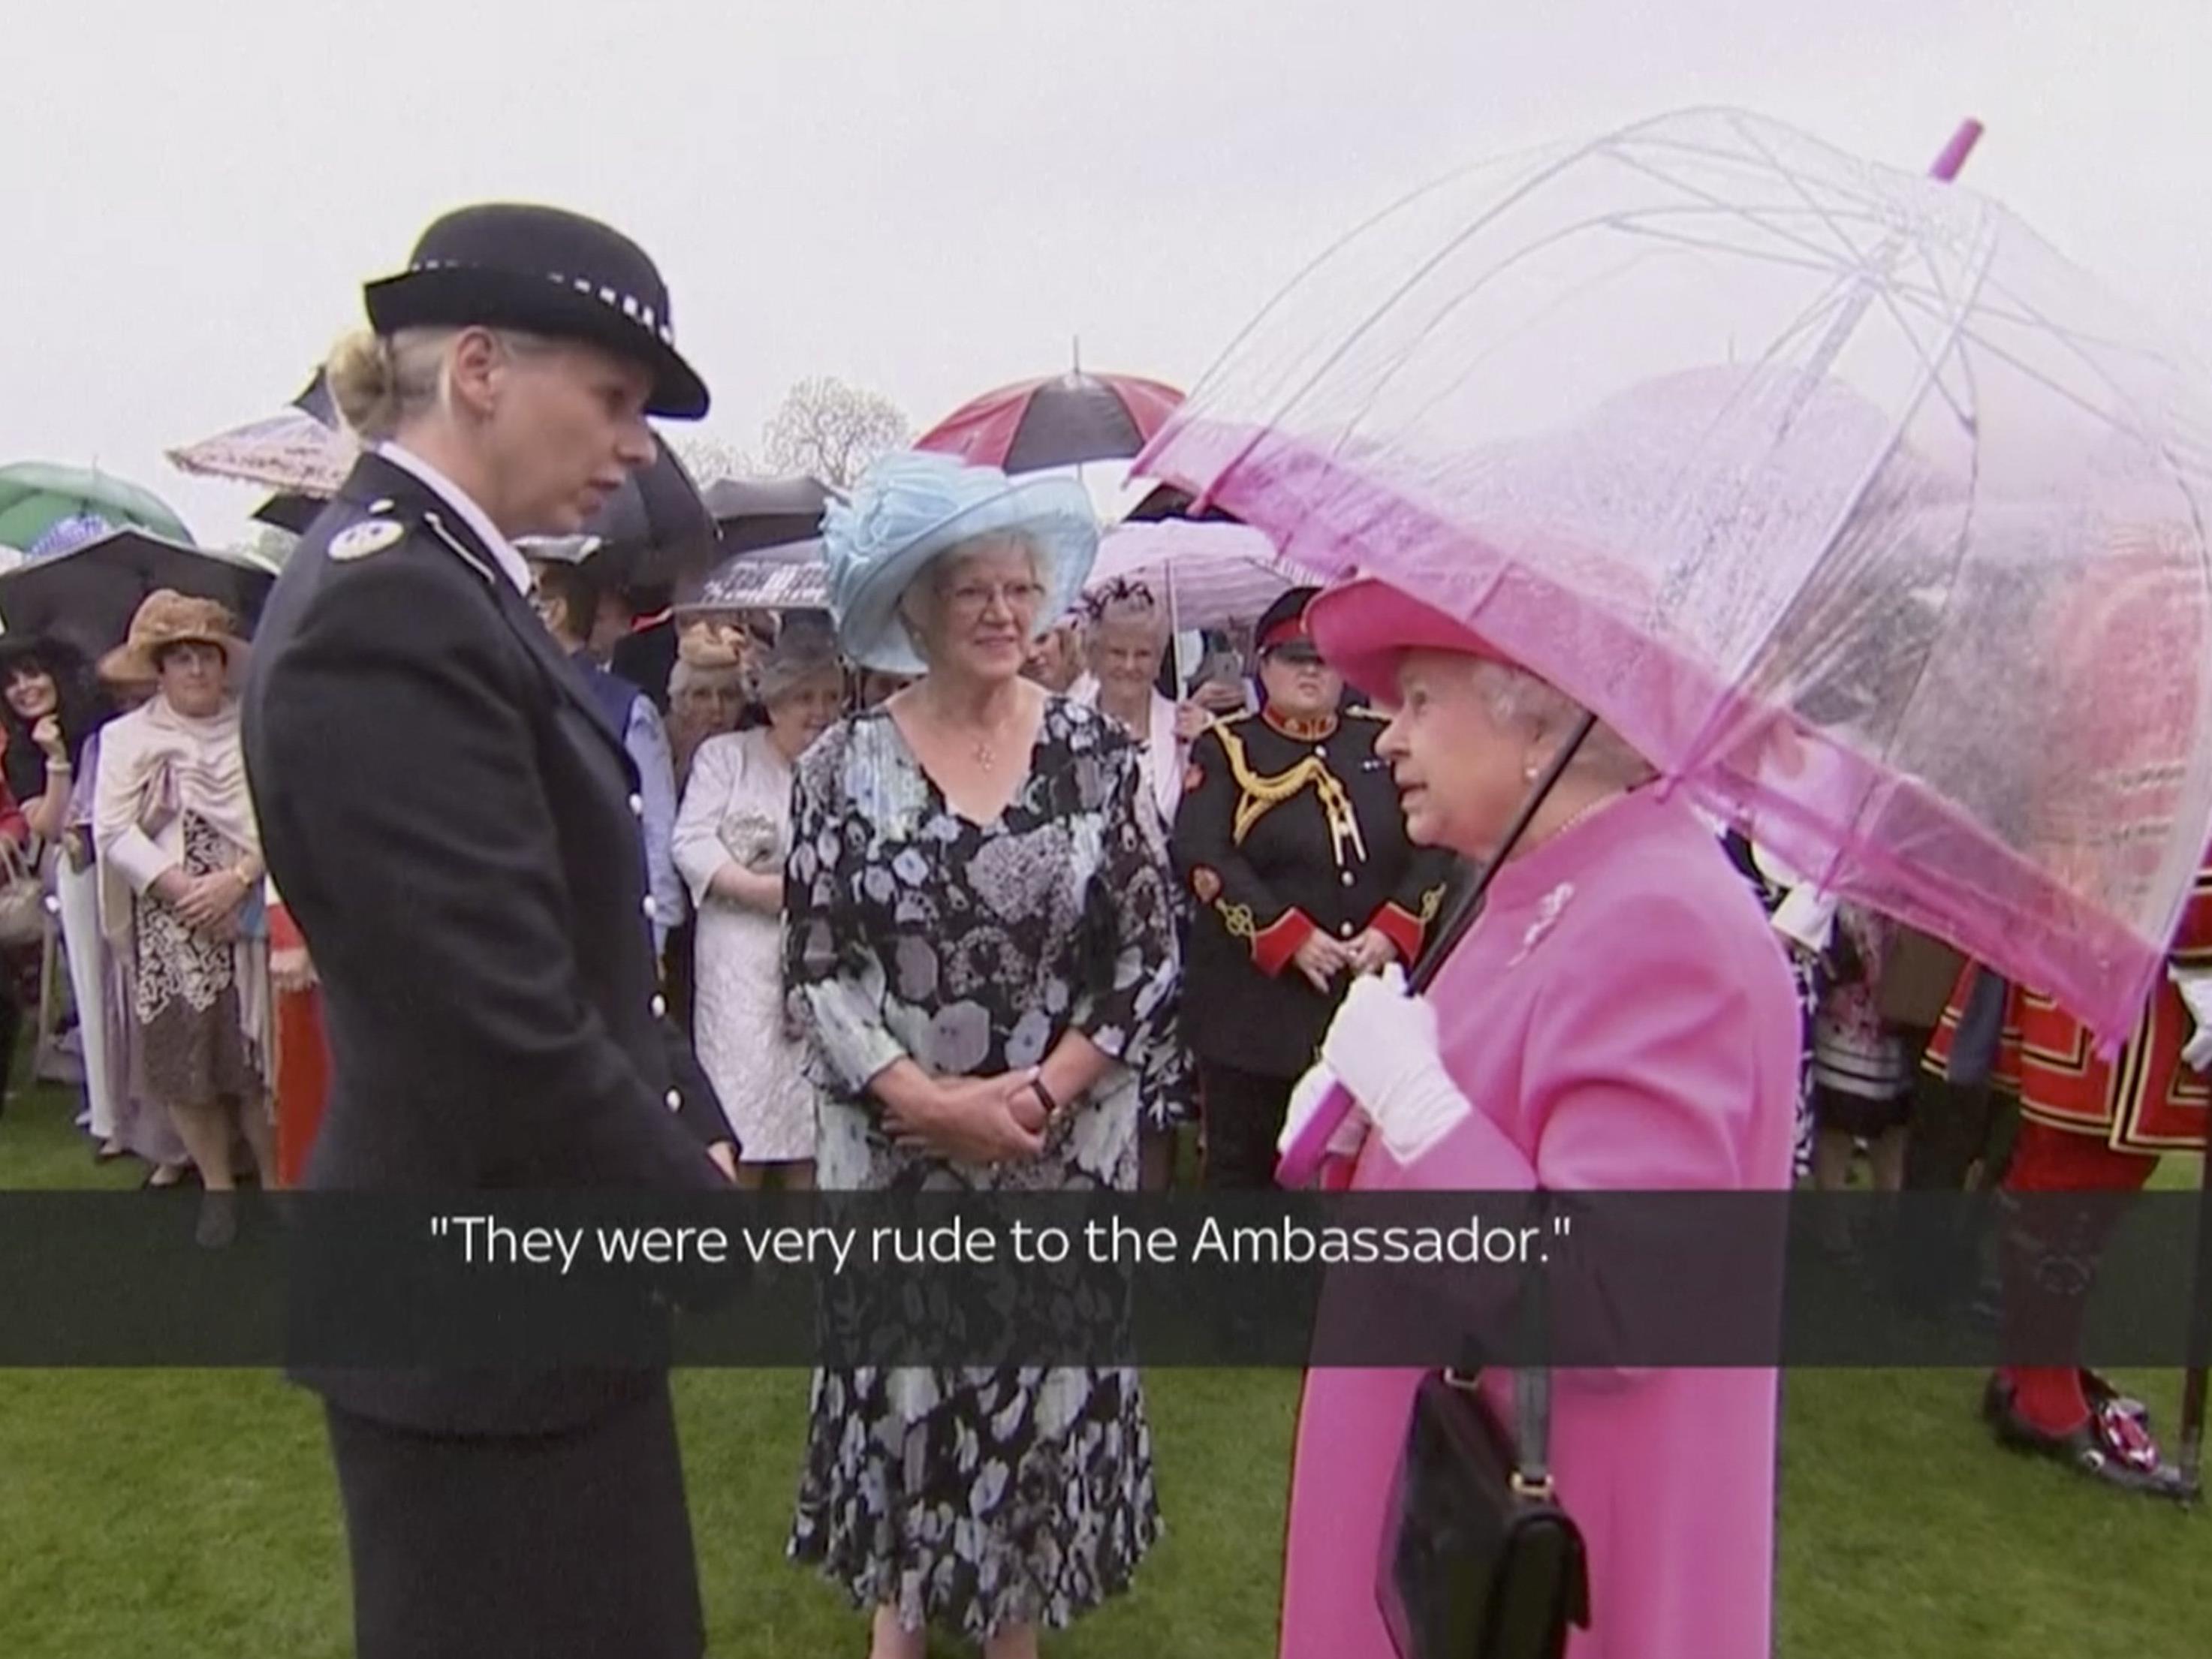 The Queen is not amused - BBC zeichnet undiplomatische Worte auf.